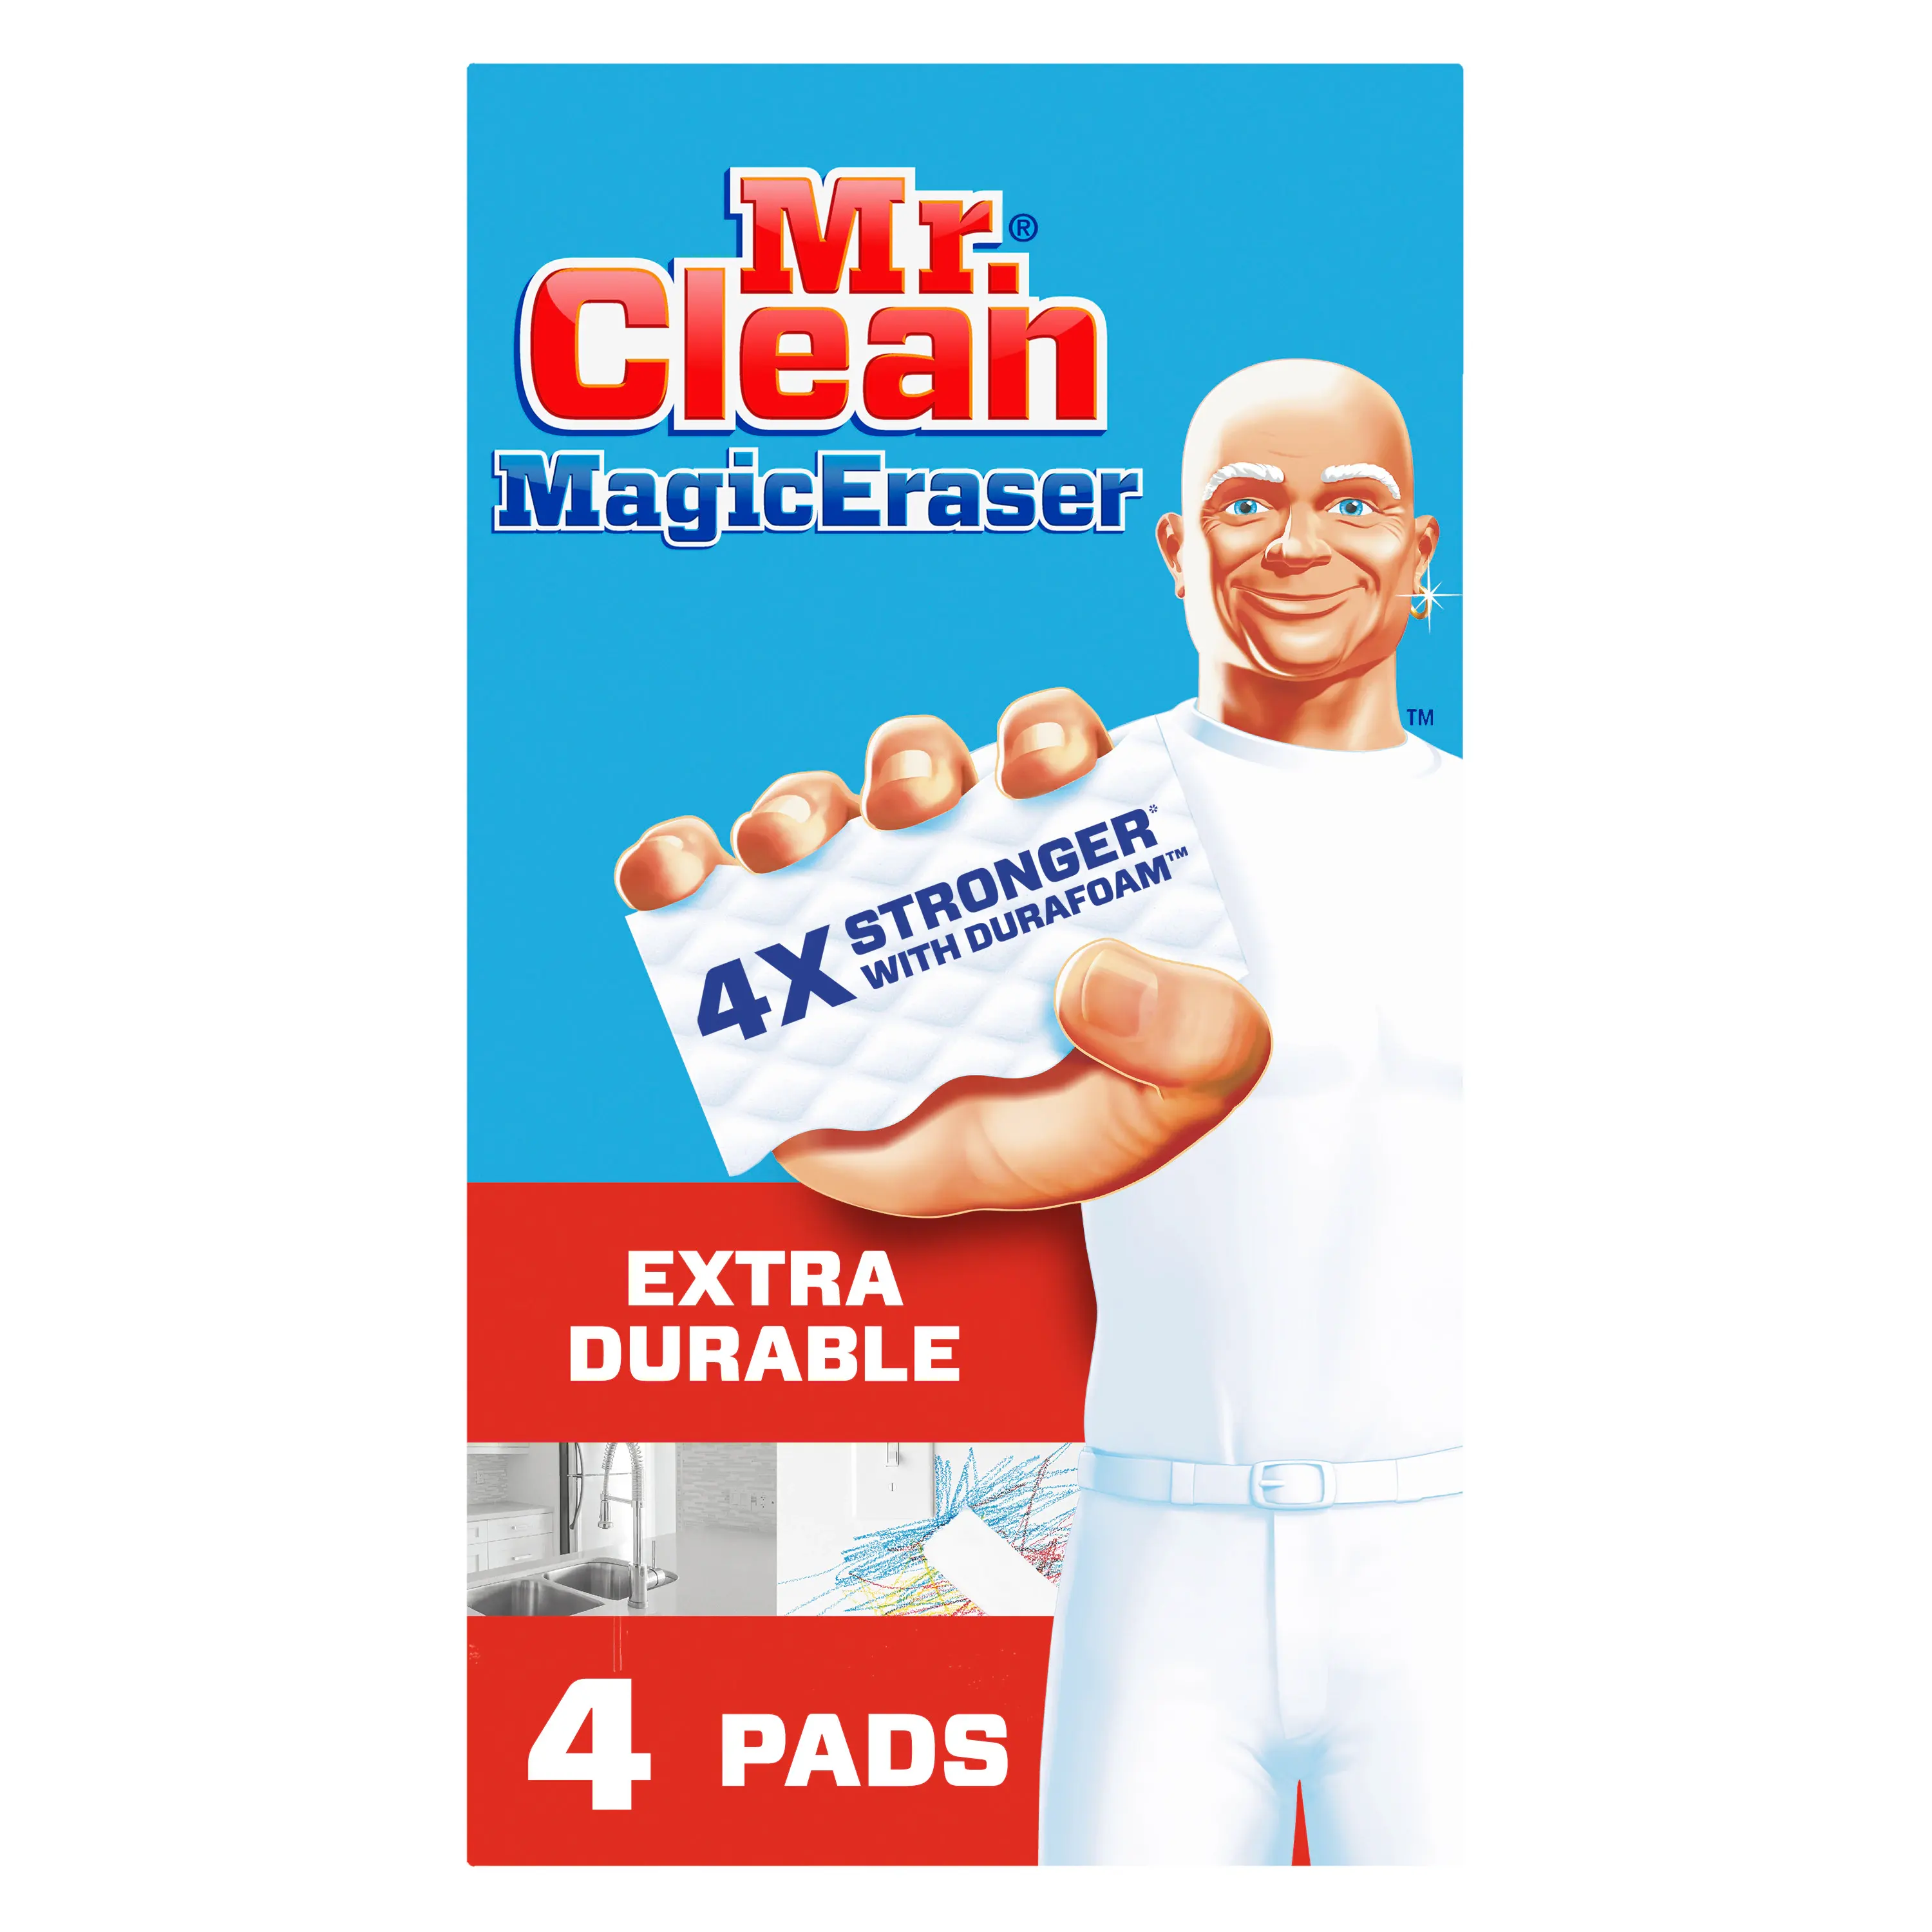 Lingettes nettoyantes Mr. Clean Magic Eraser pour la cuisine, la salle de bain et la douche, 48 feuilles de gomme magique au total